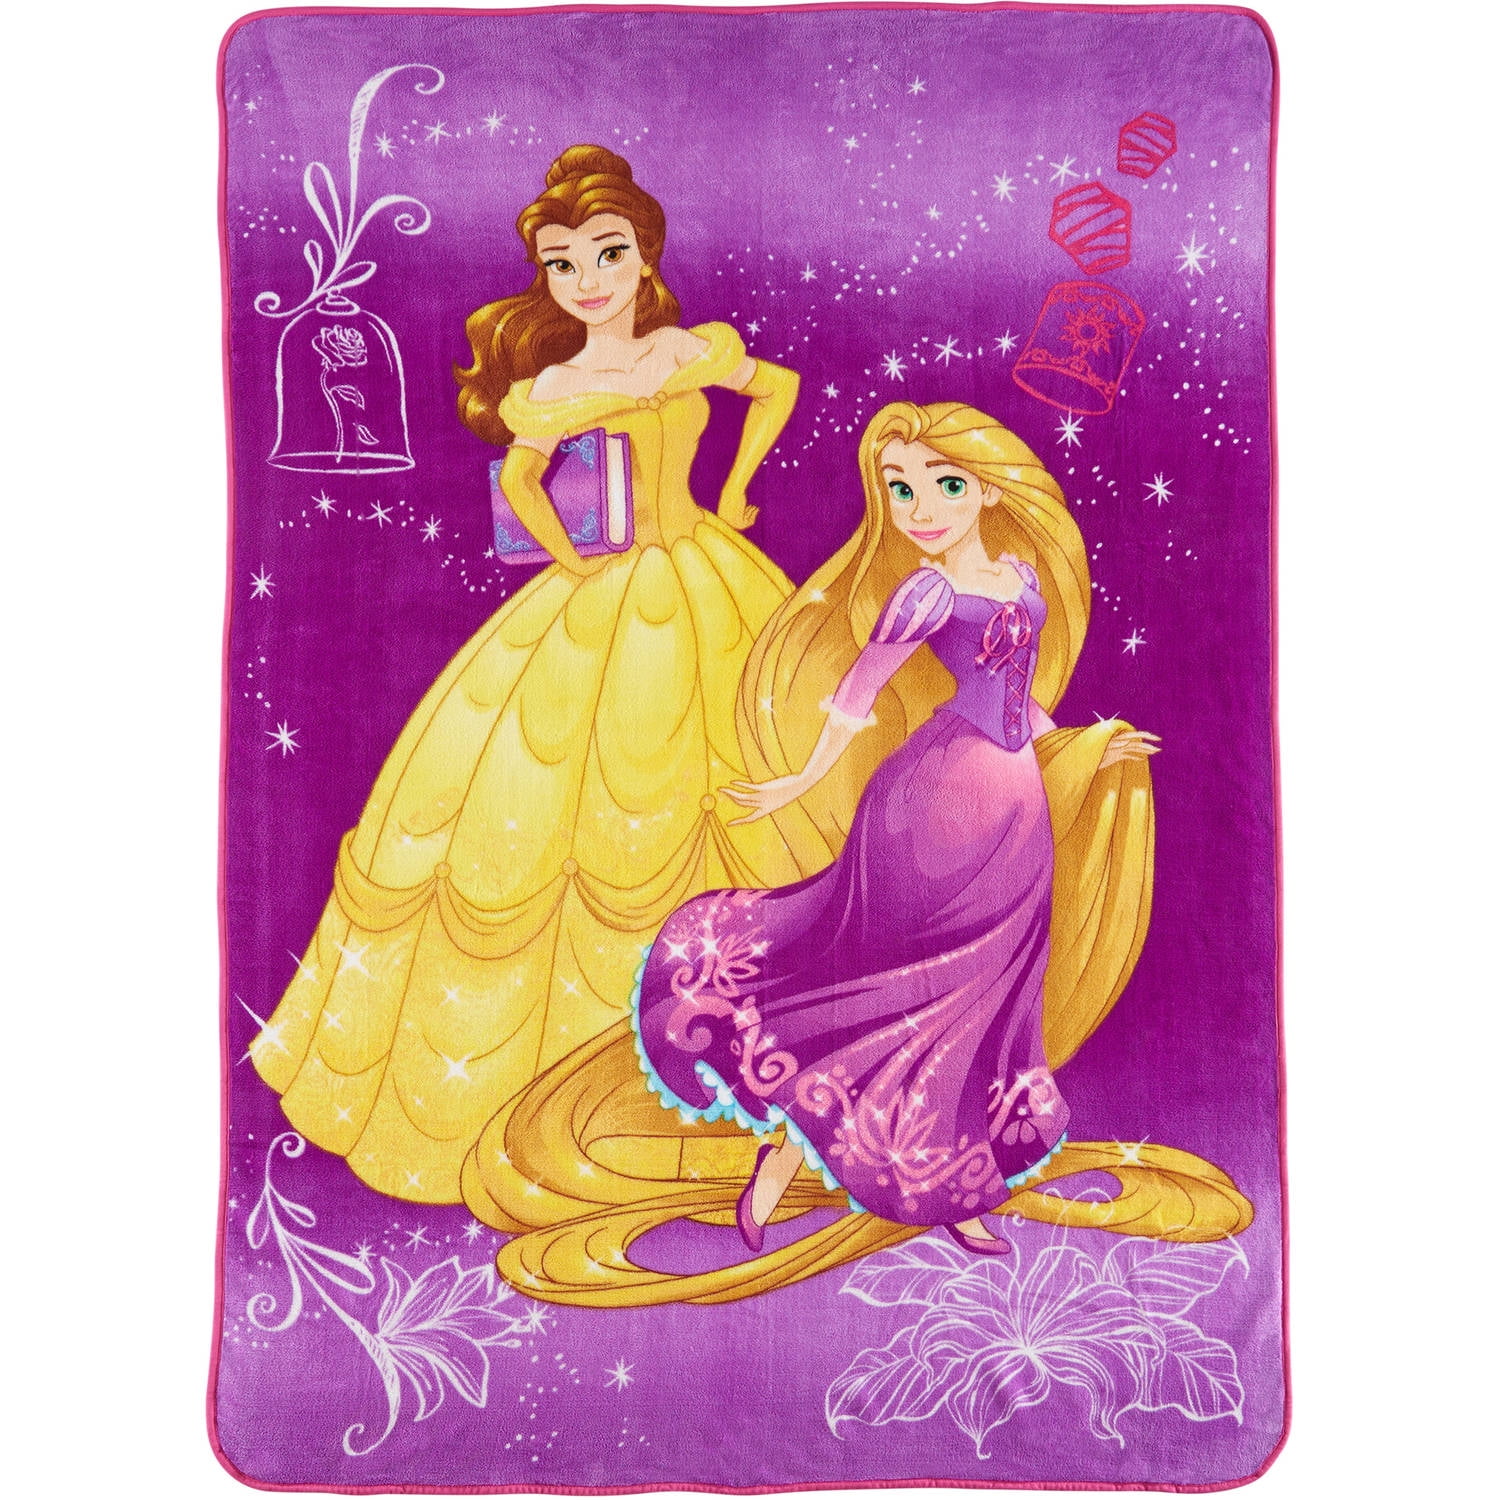 Details about   Disney Princess Plush Blanket Belle Rapunzel 62"x 90" 